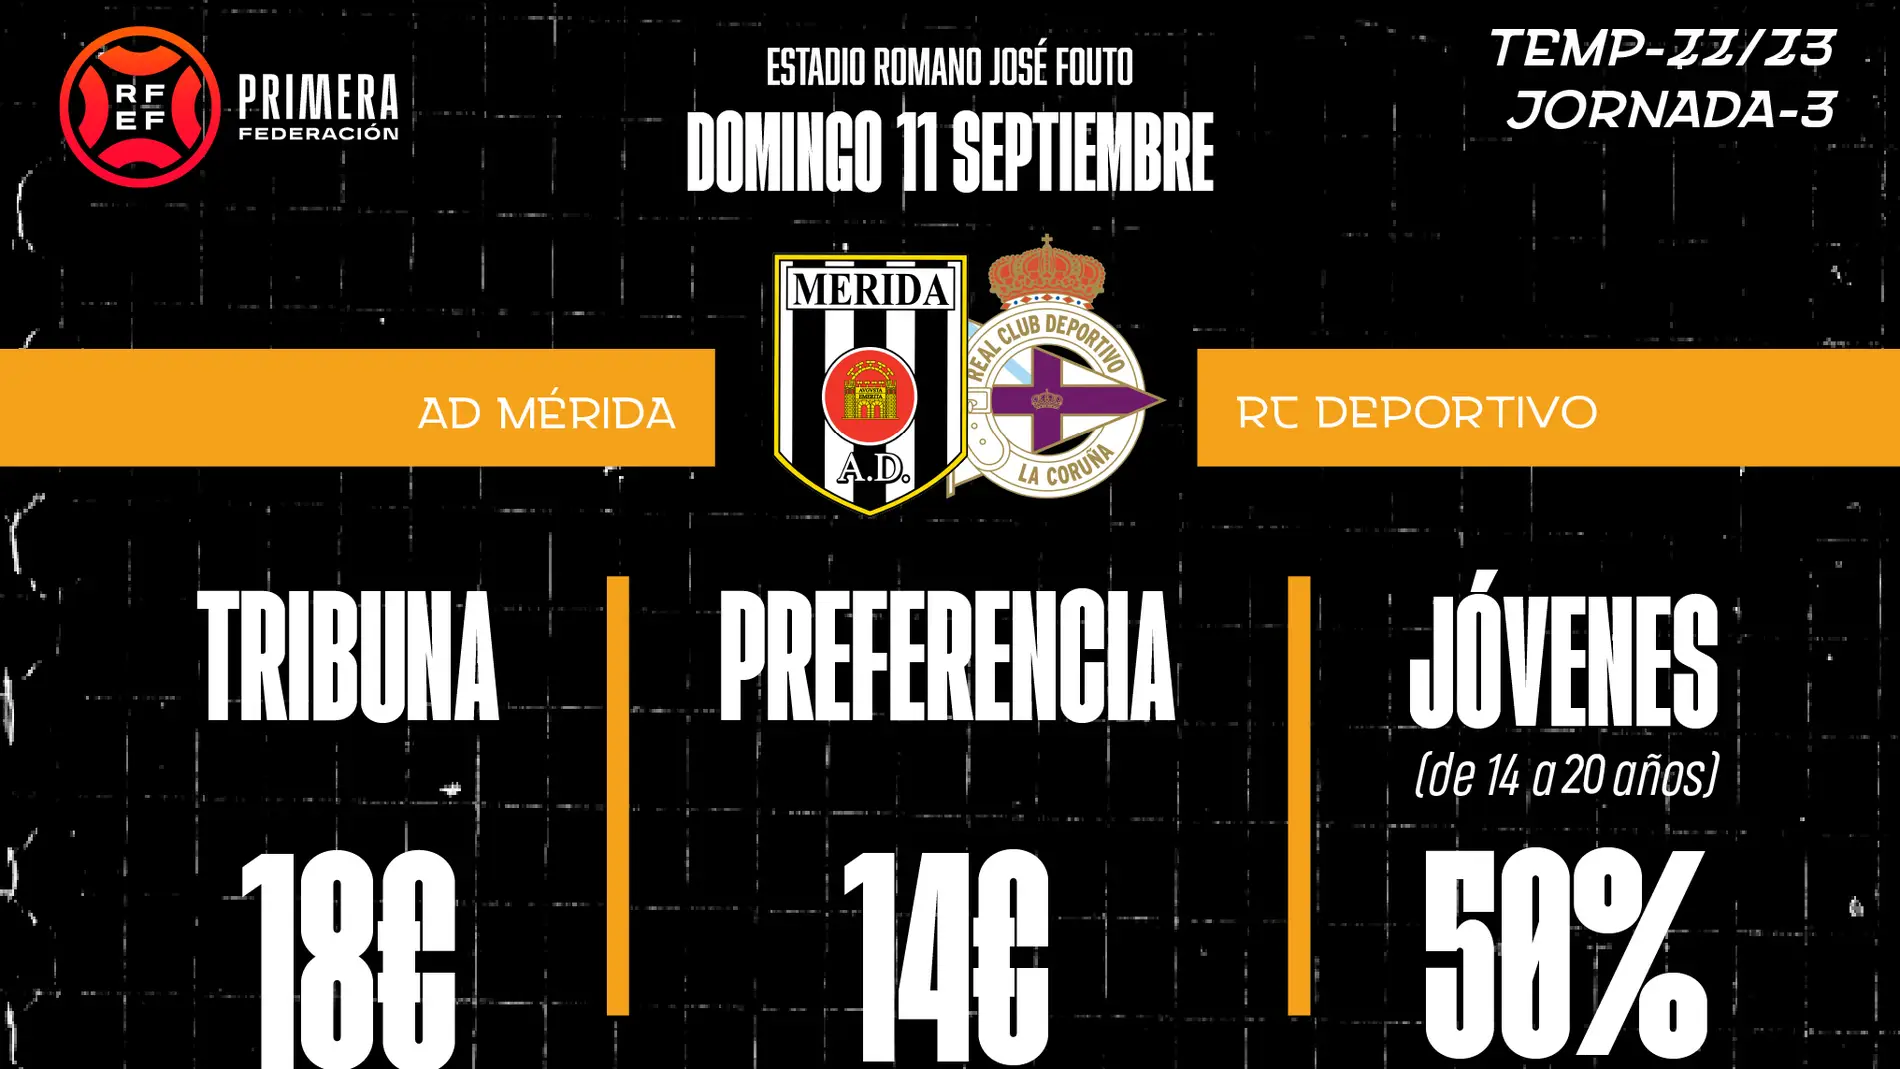 AD Mérida v.s RC Deportivo de la Coruña, domingo a las 12h 